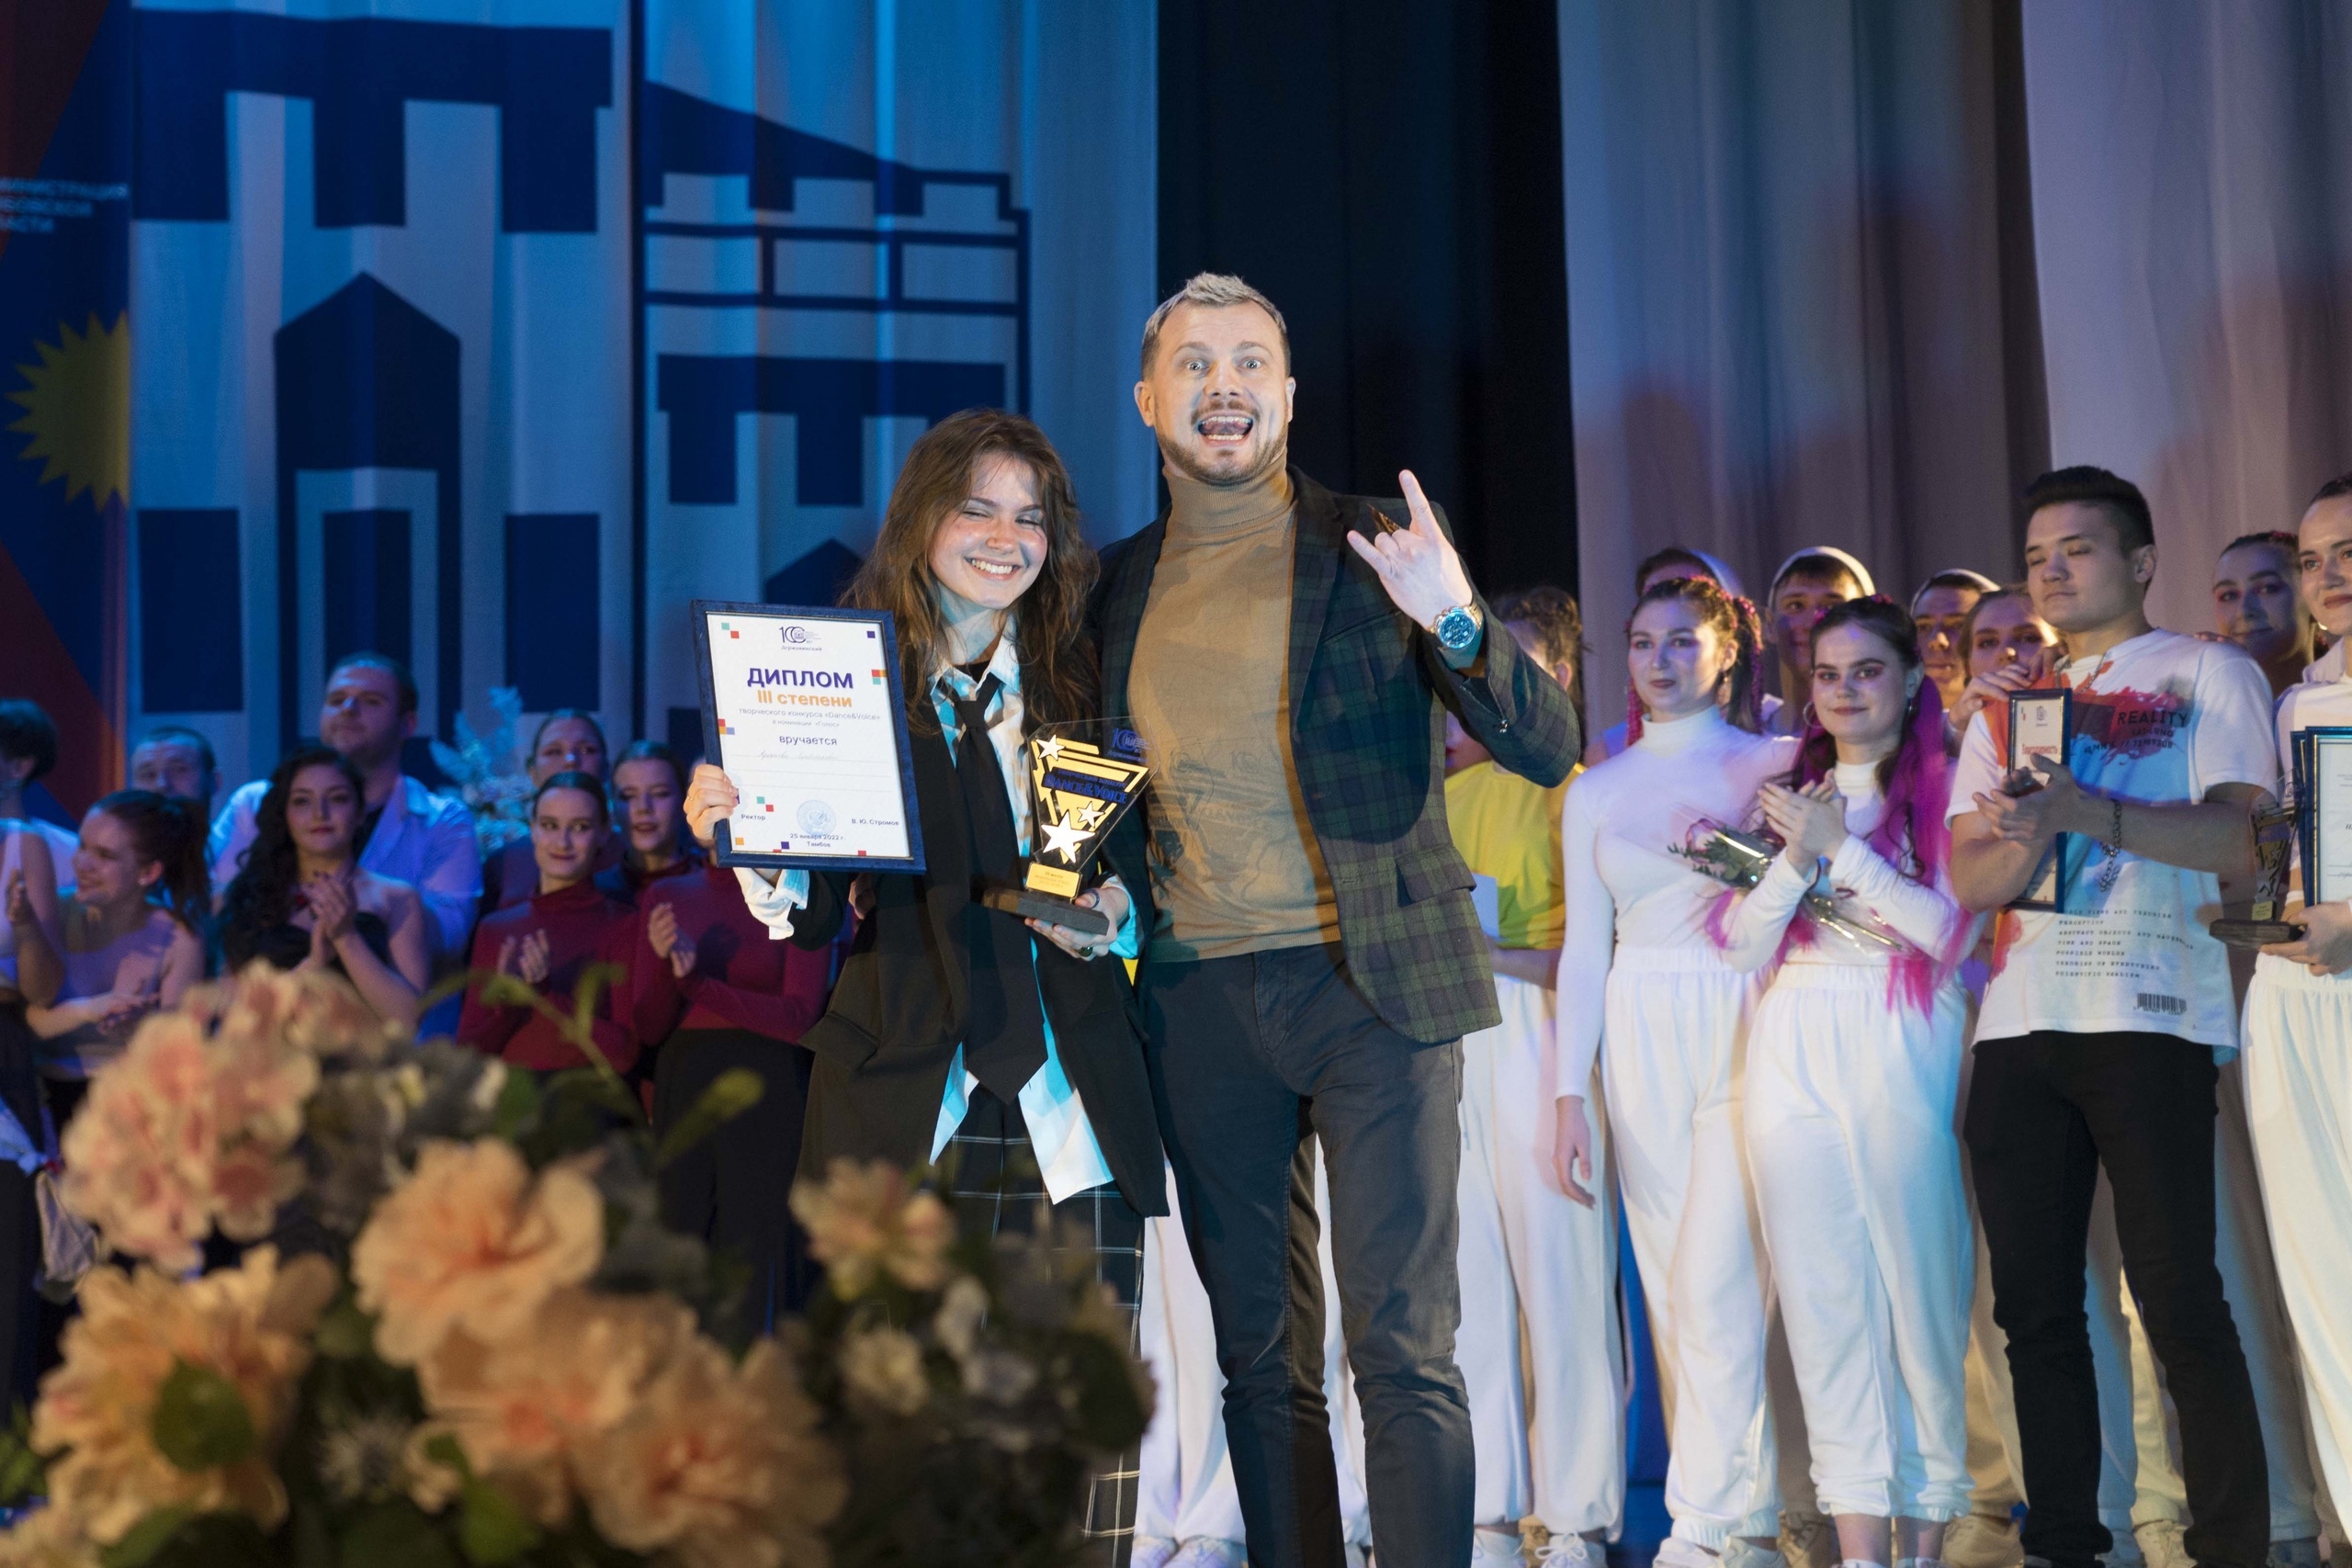 Поздравляем Ярославу Хлебникову и танцевальный коллектив с третьим местом в творческом конкурсе Danse&Voice в номинации "Голос"!